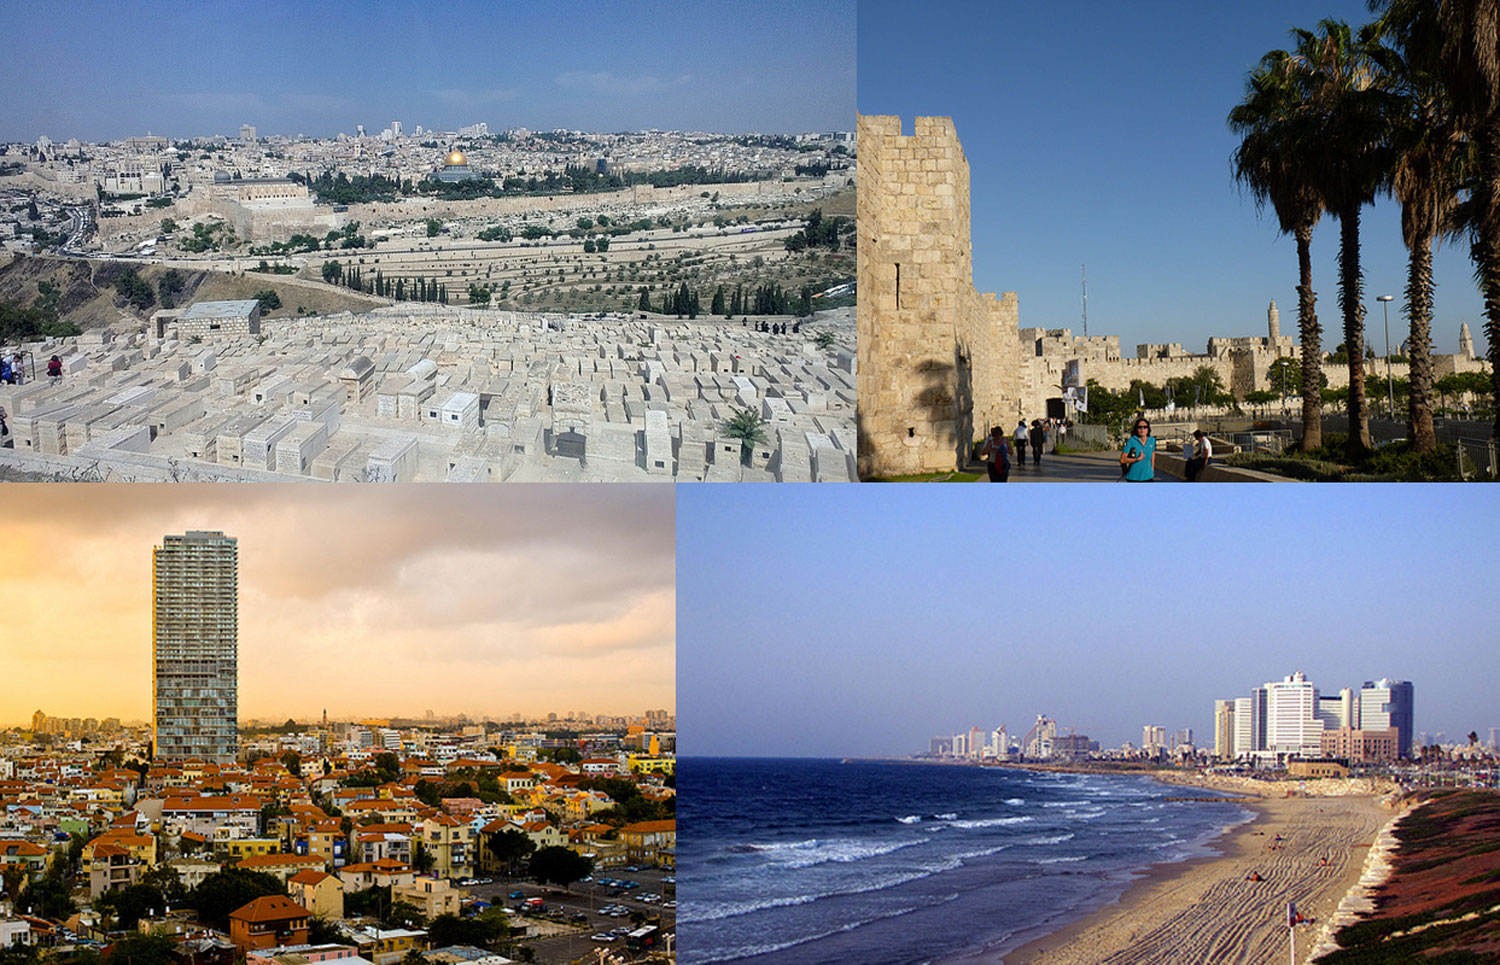 Fakta: Jerusalem og Tel Aviv er de to største byene i Israel.